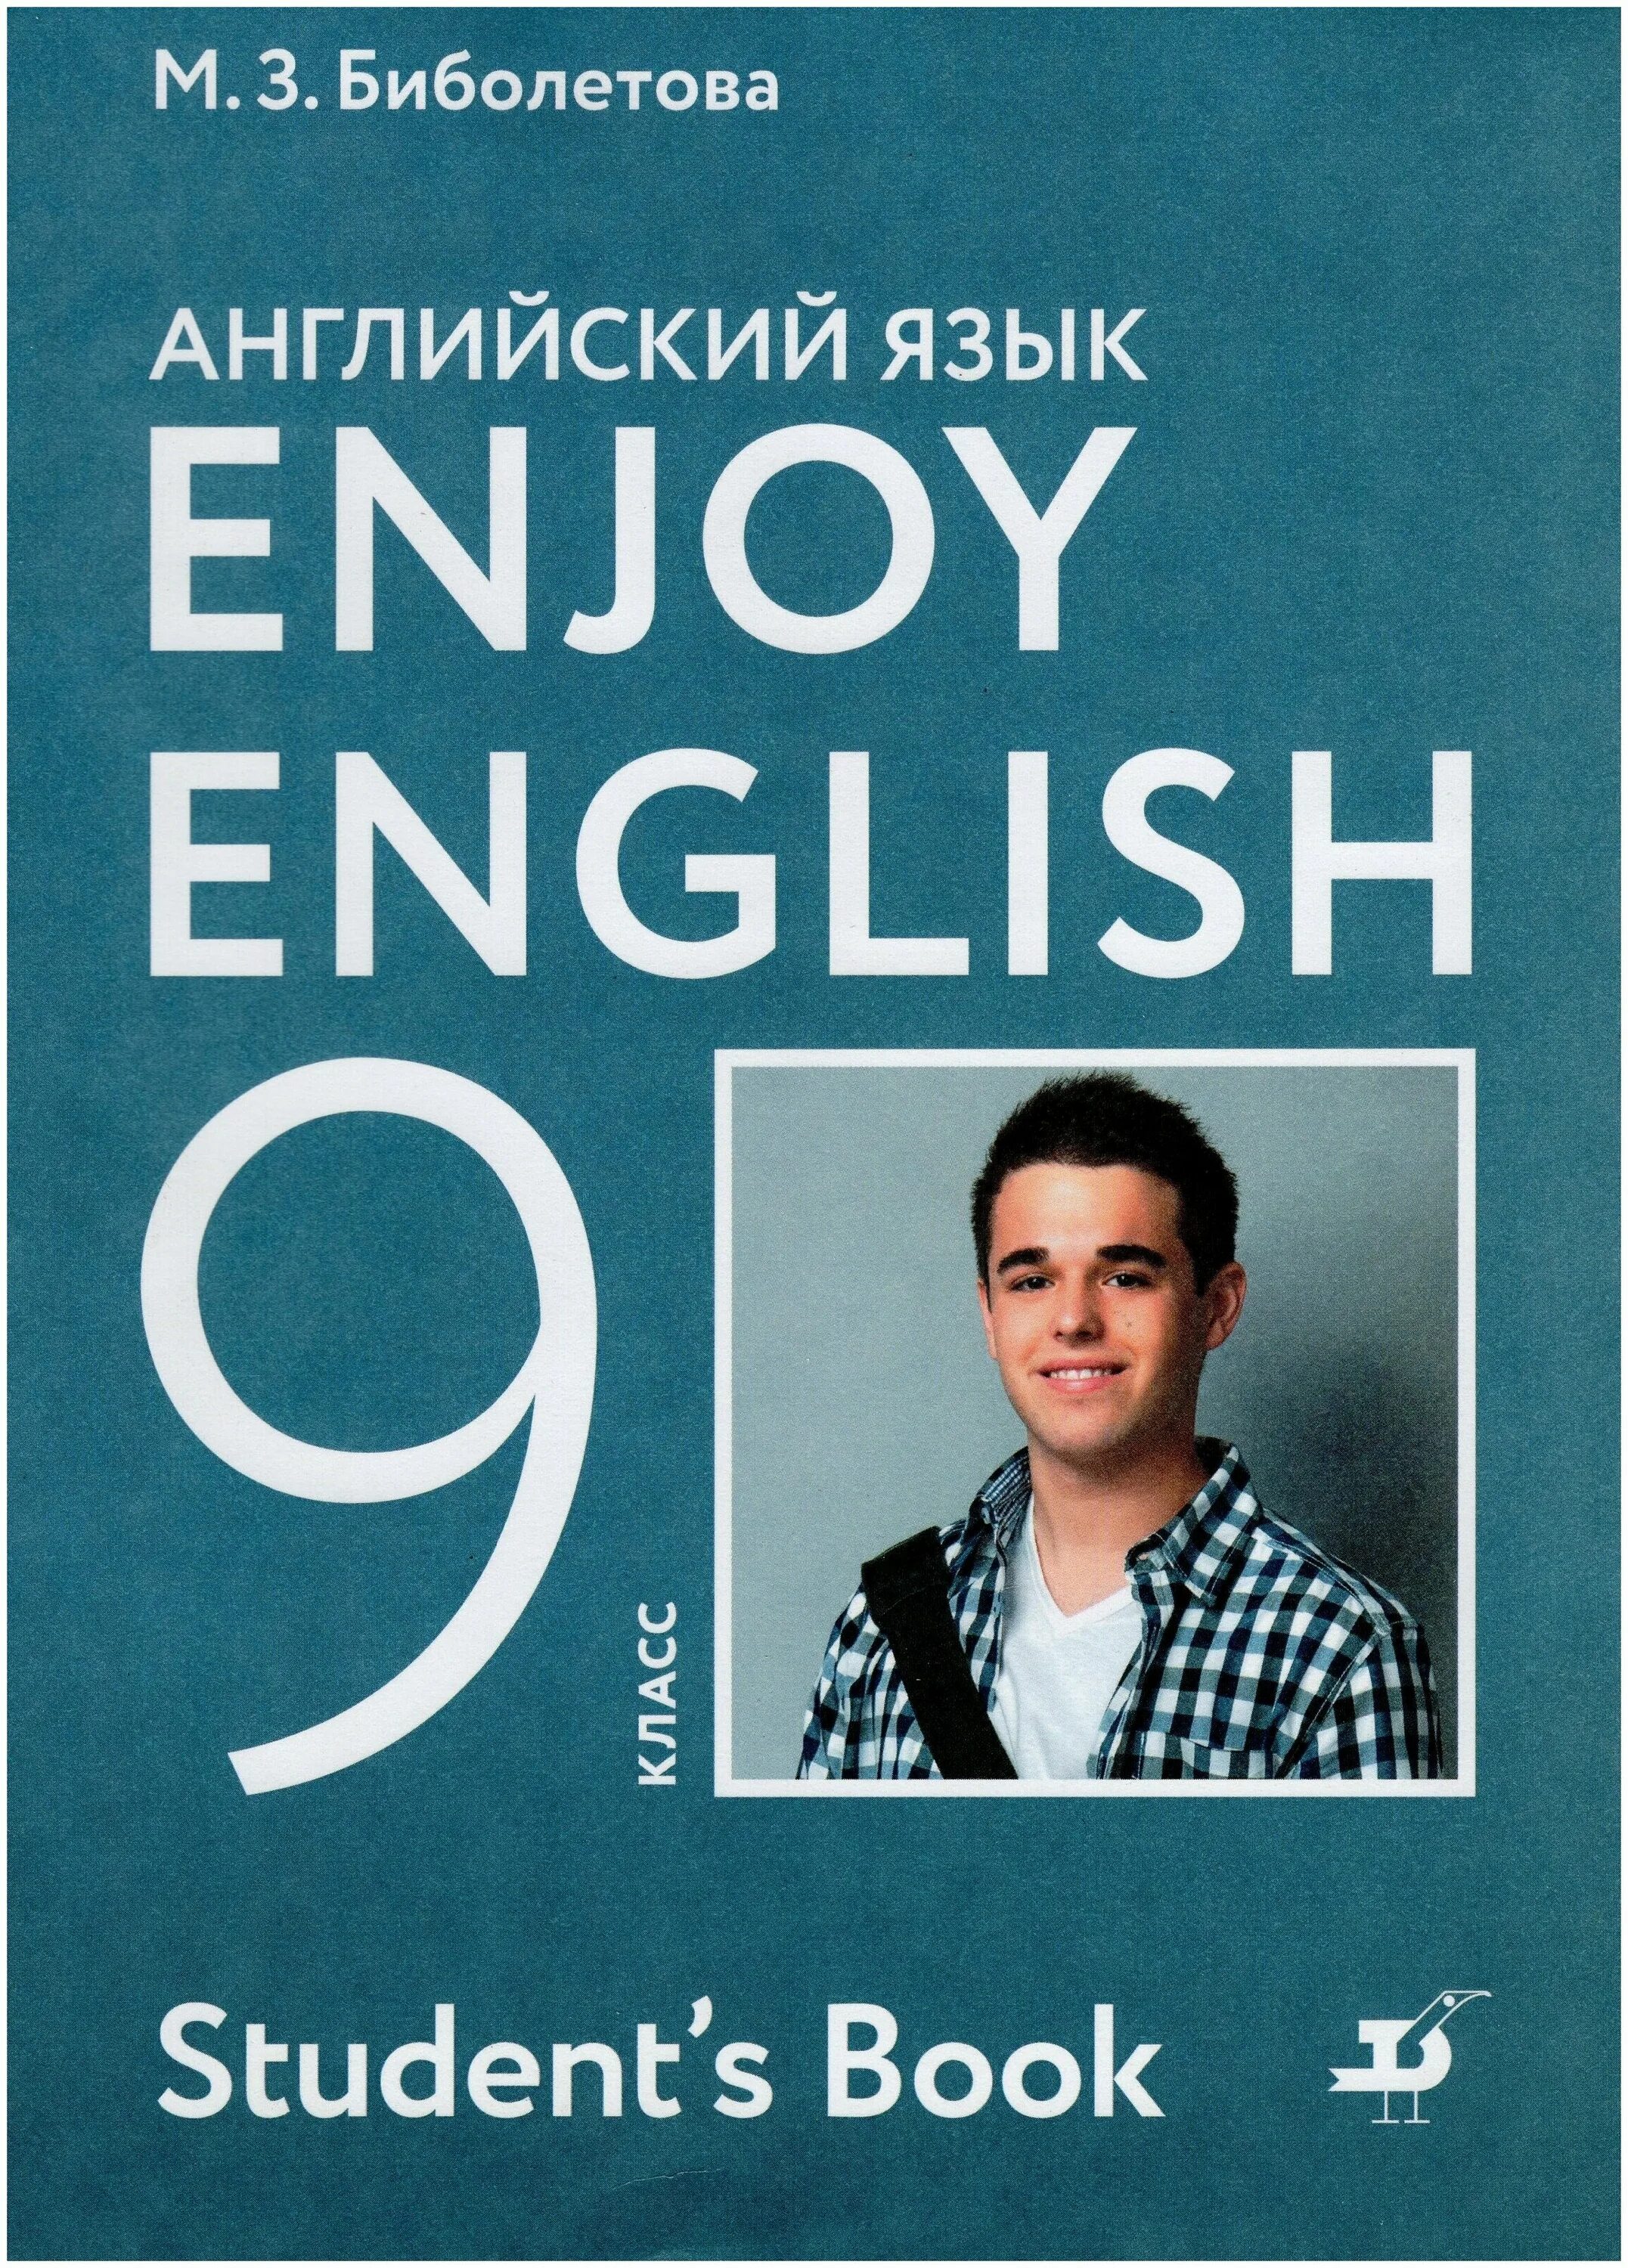 Российский учебник английский язык. Enjoy English 9 класс. Enjoy English учебник. Биболетова учебник. Учебник enjoy English 9.